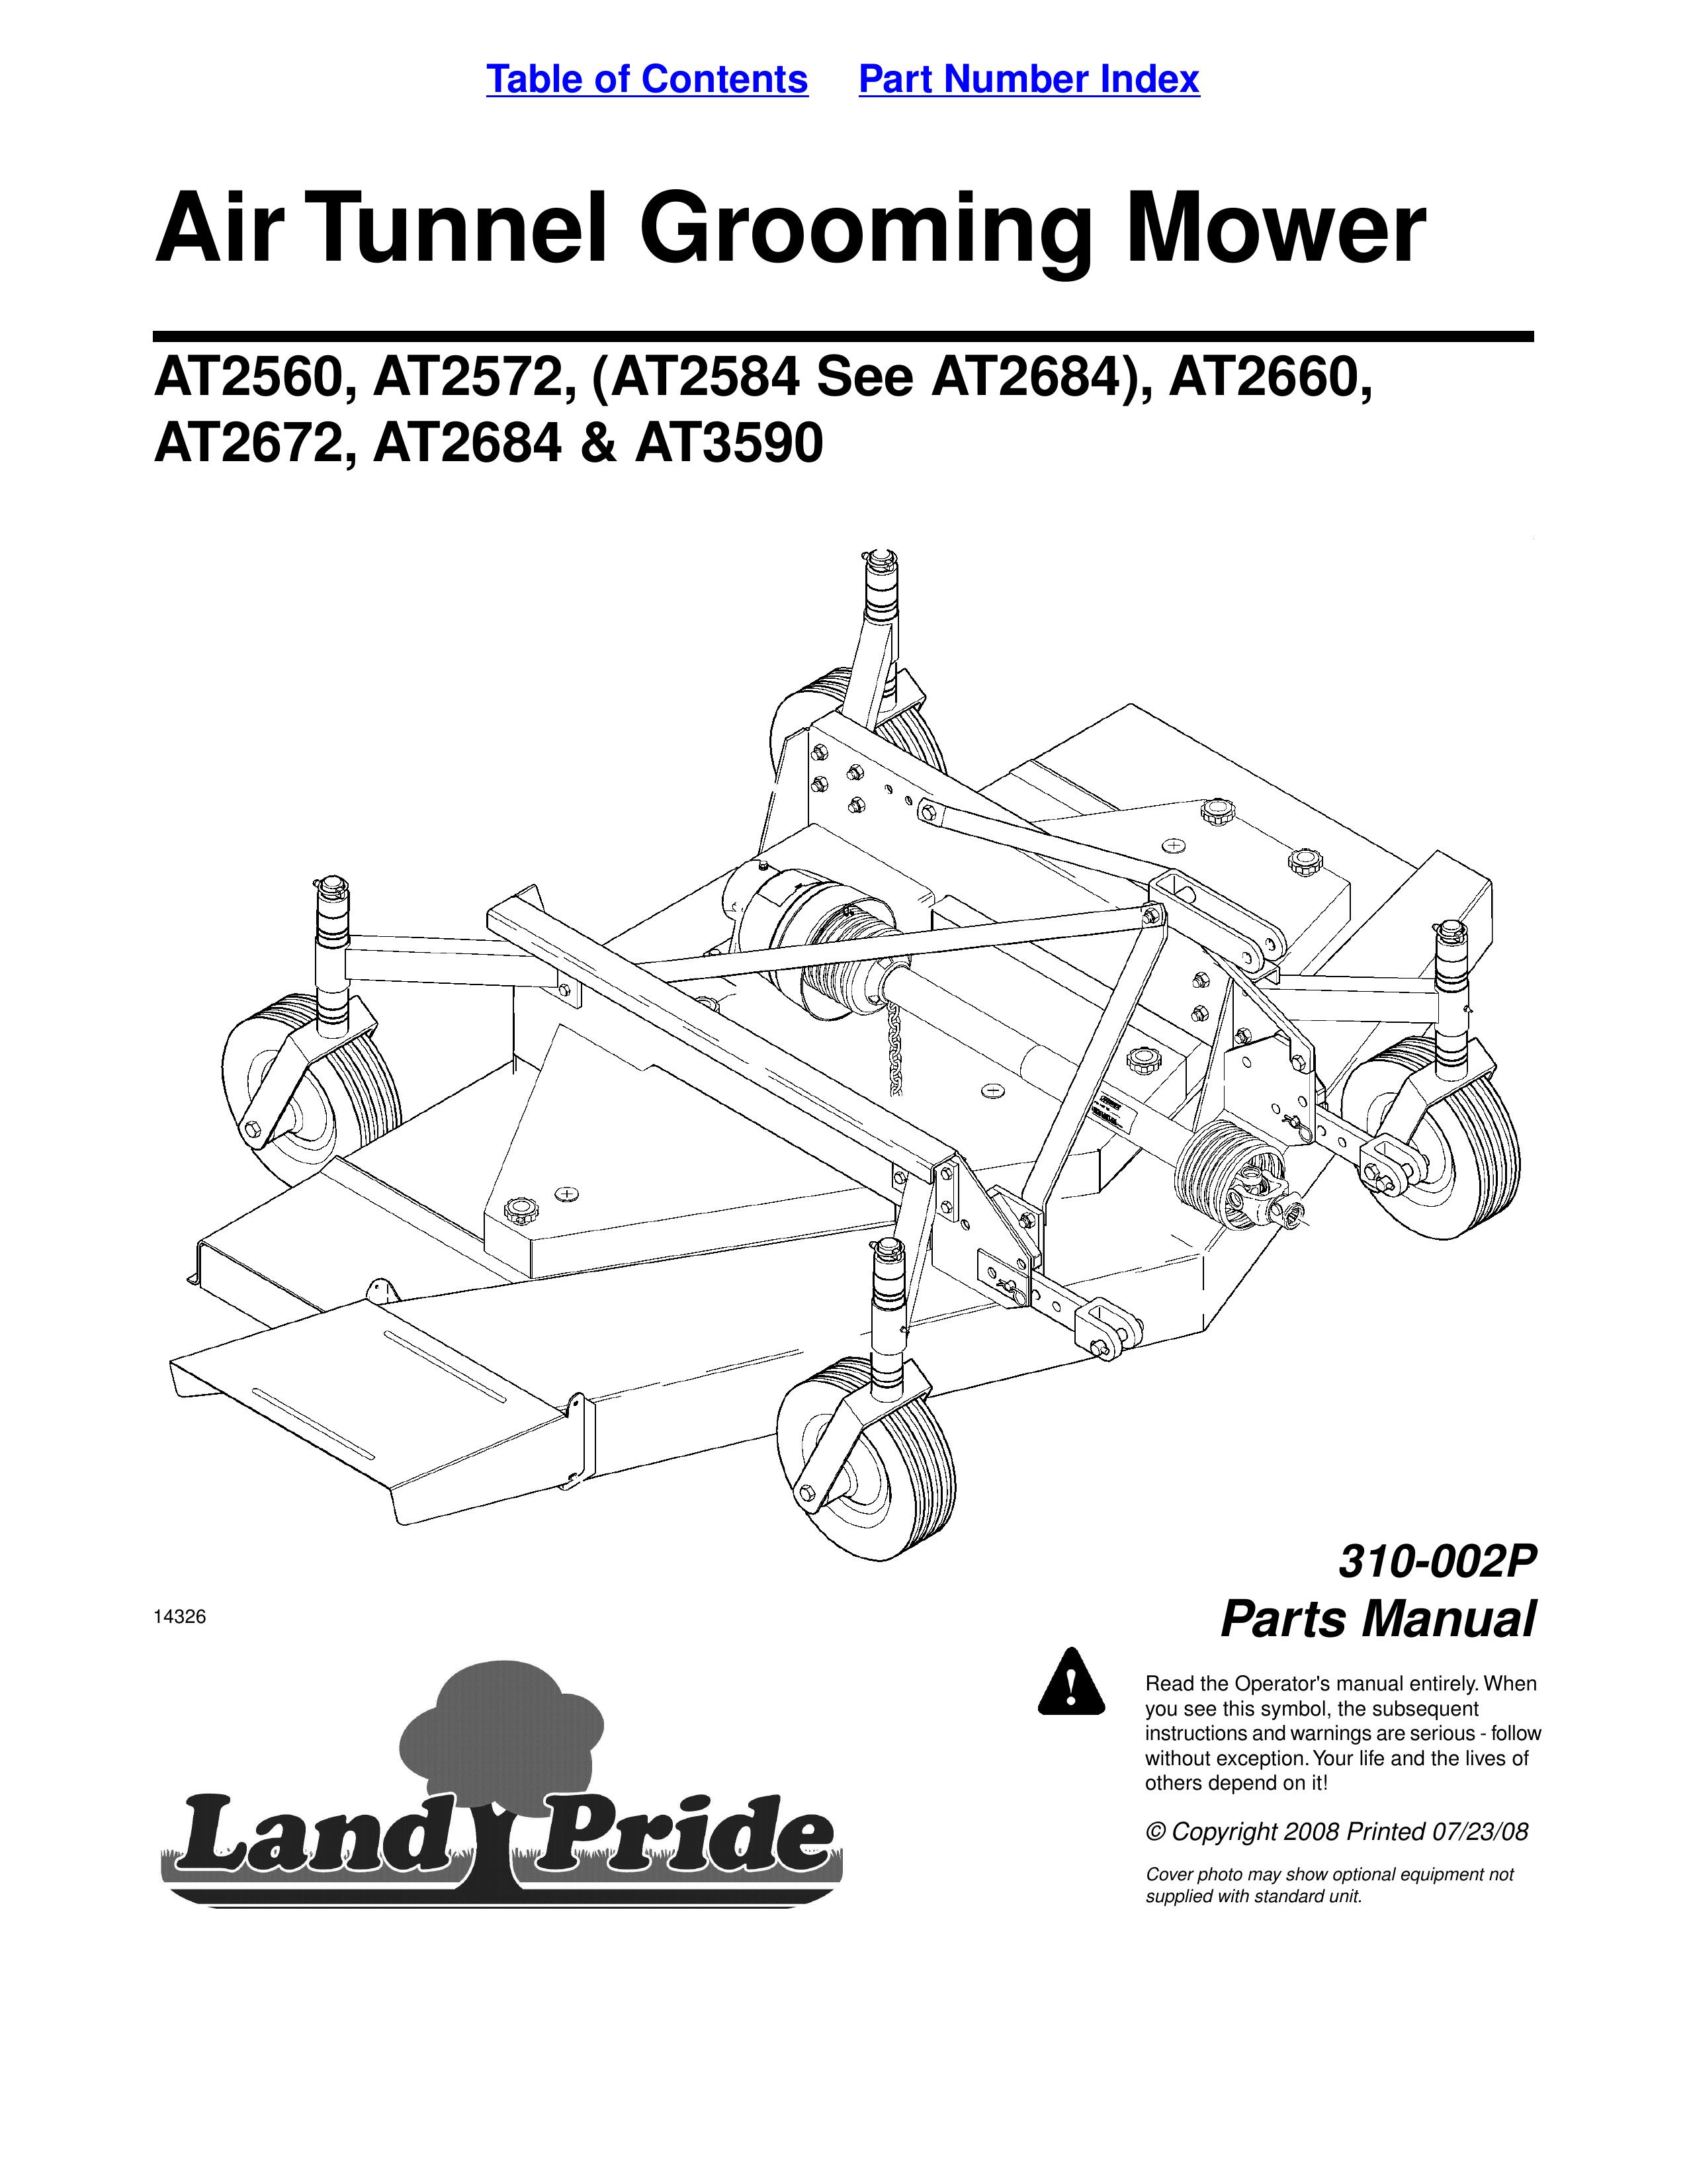 Land Pride AT3590 Lawn Mower User Manual